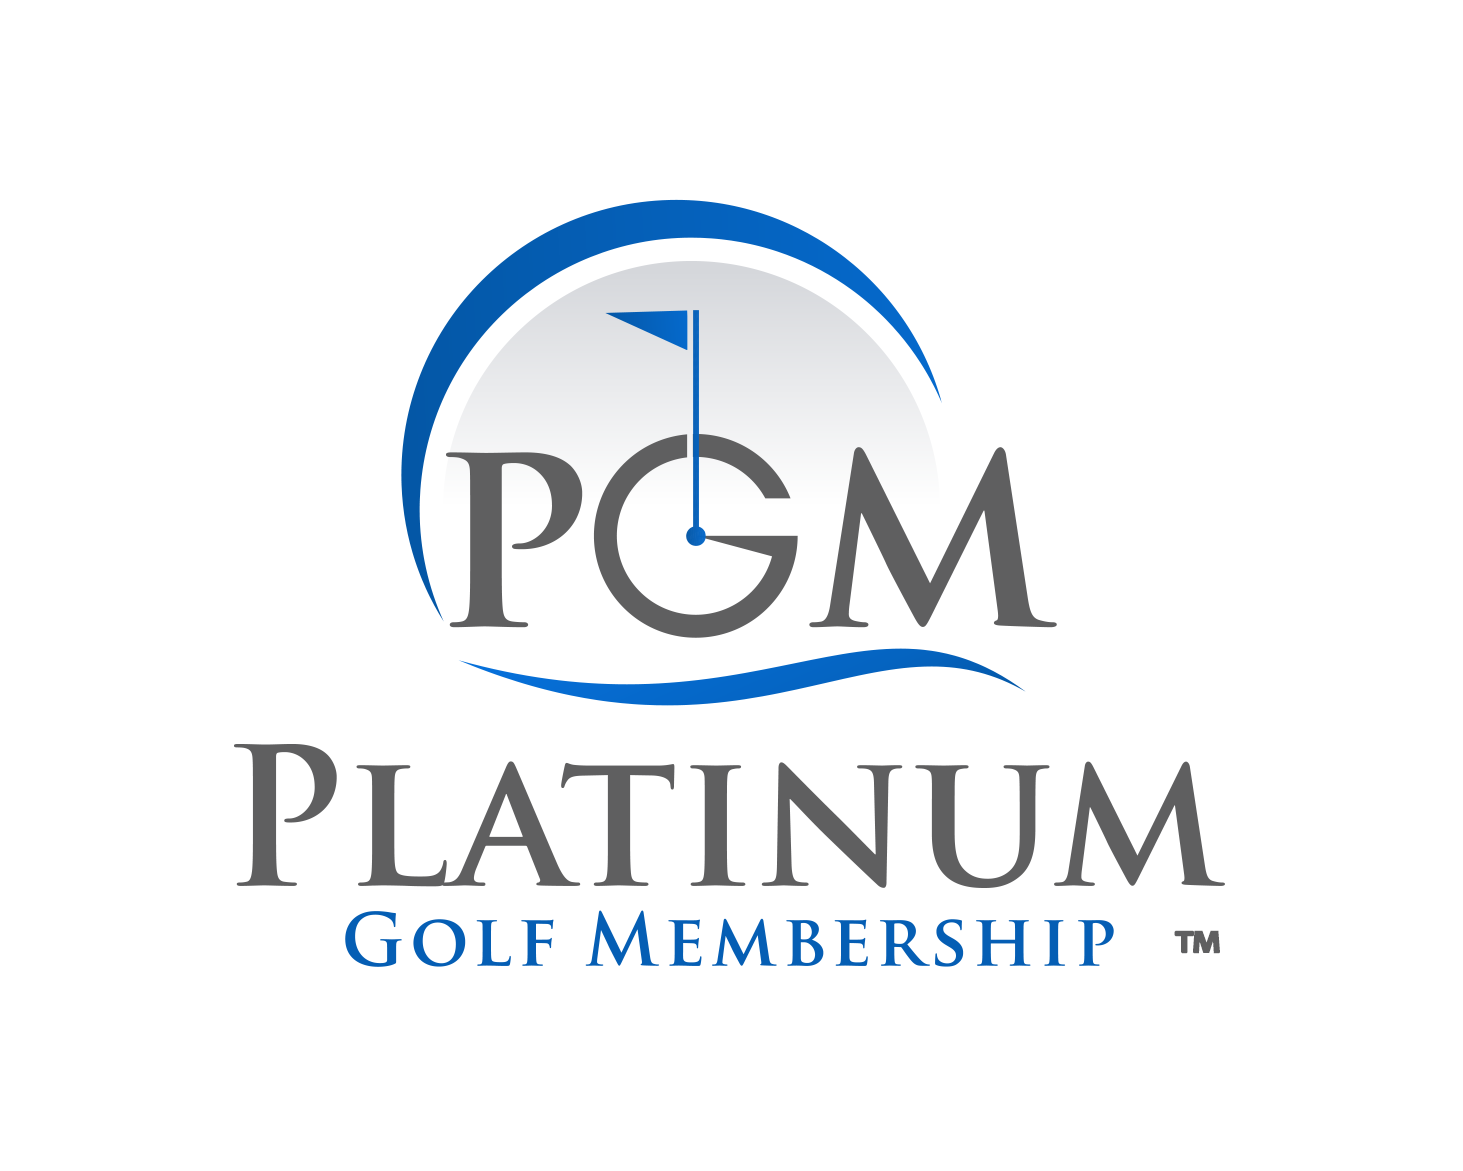 Platinum Golf Membership ™